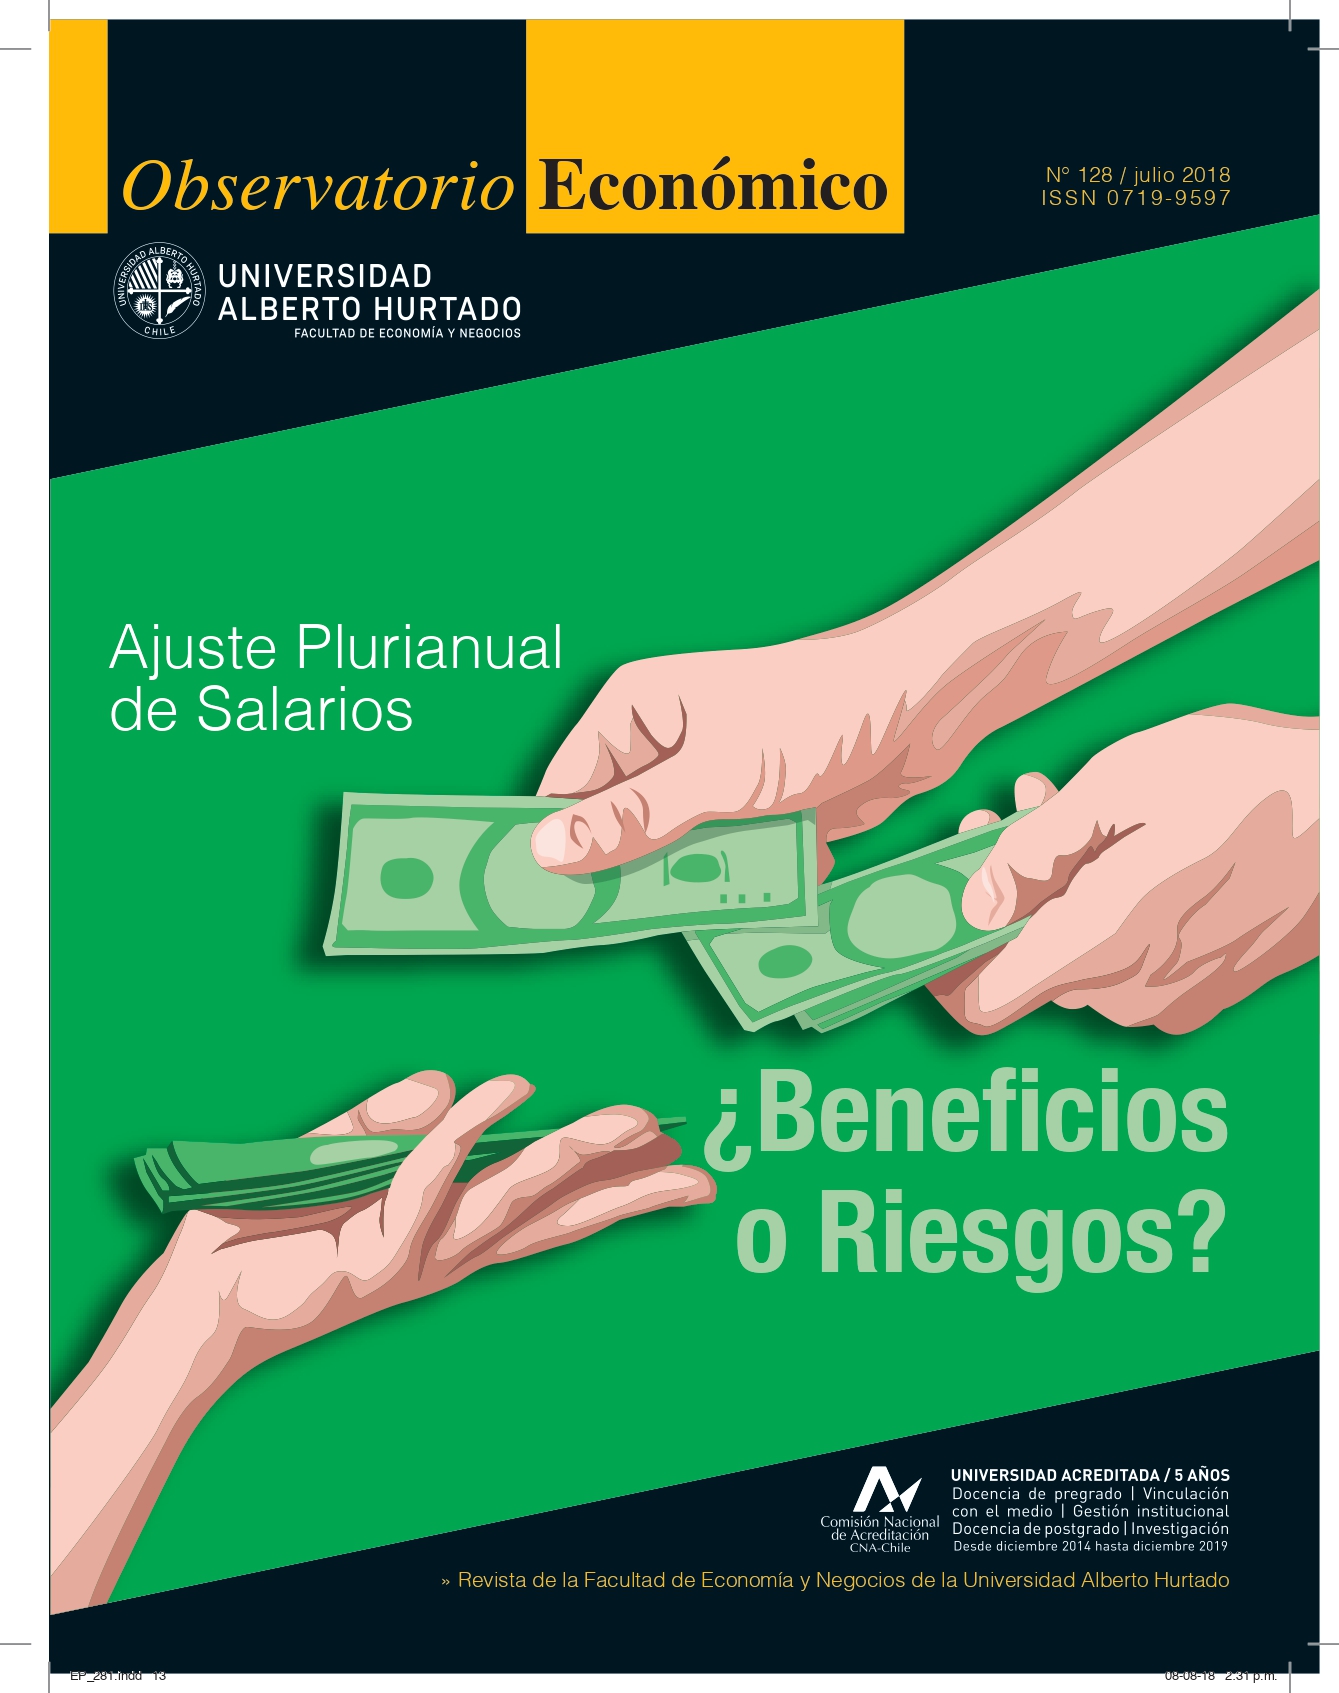 TÃ­tulo del nÃºmero de la revista : "Ajuste Plurianual de Salarios : Â¿Beneficios o Riesgos?"